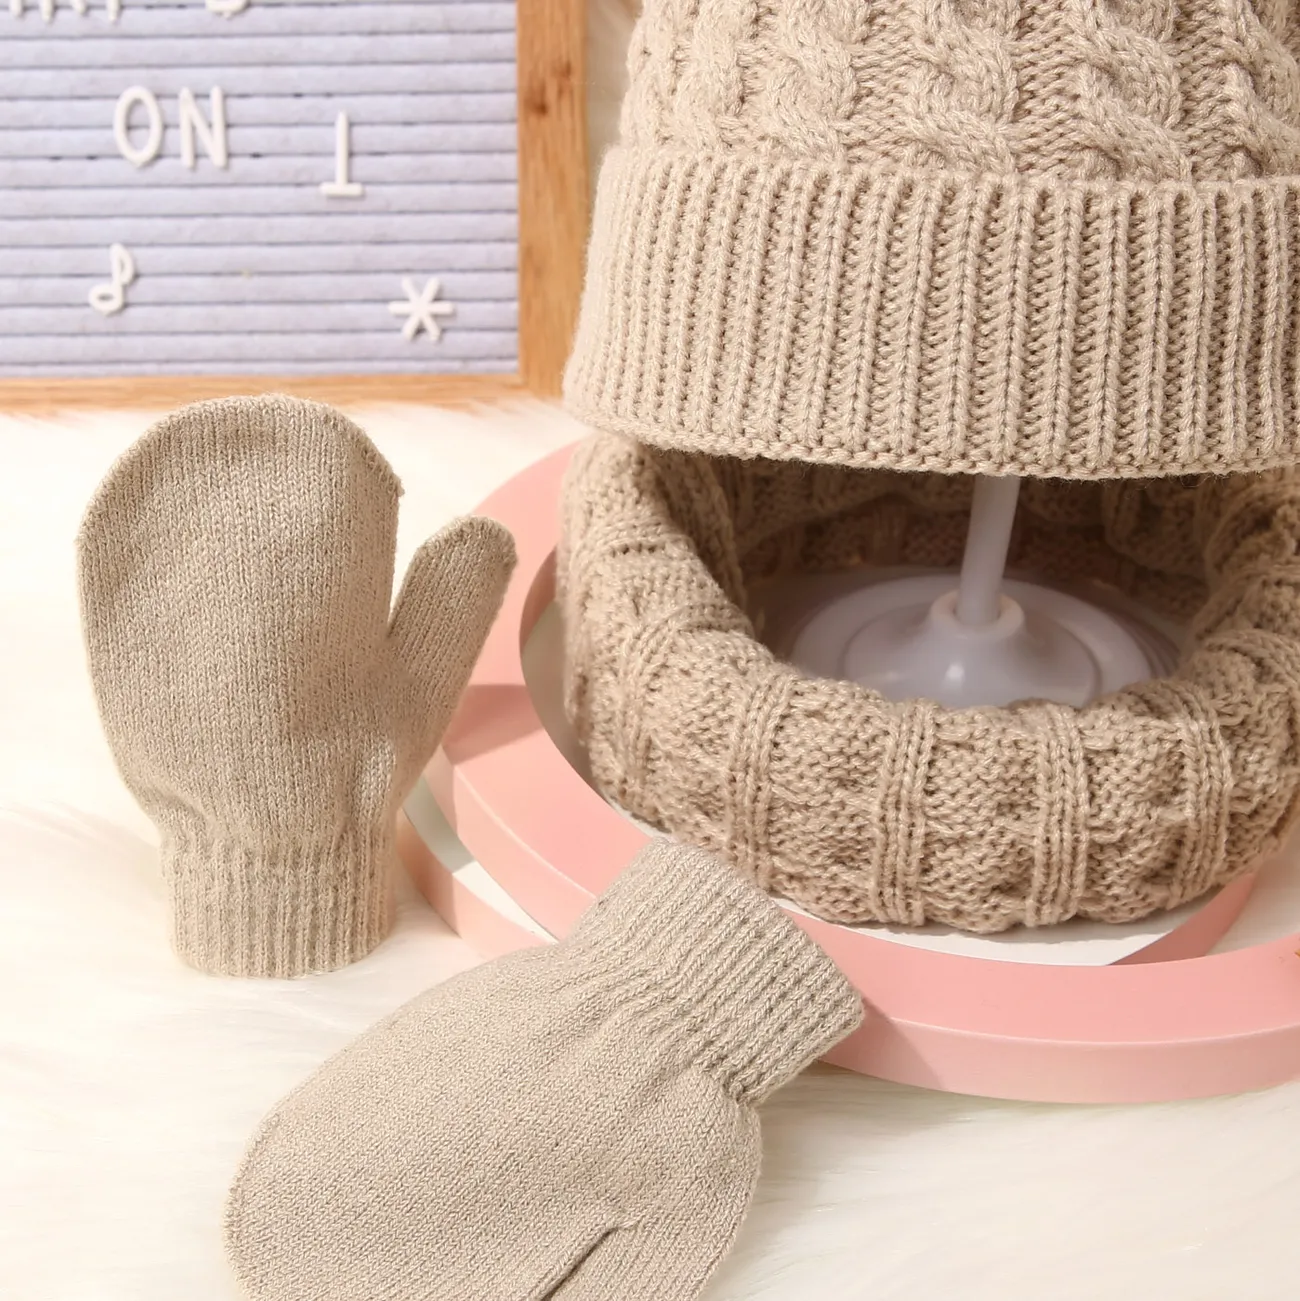 3 件裝嬰兒 / 蹣跚學步的絨球裝飾純色絞花針織帽、圍巾和連指手套套裝 卡其色 big image 1